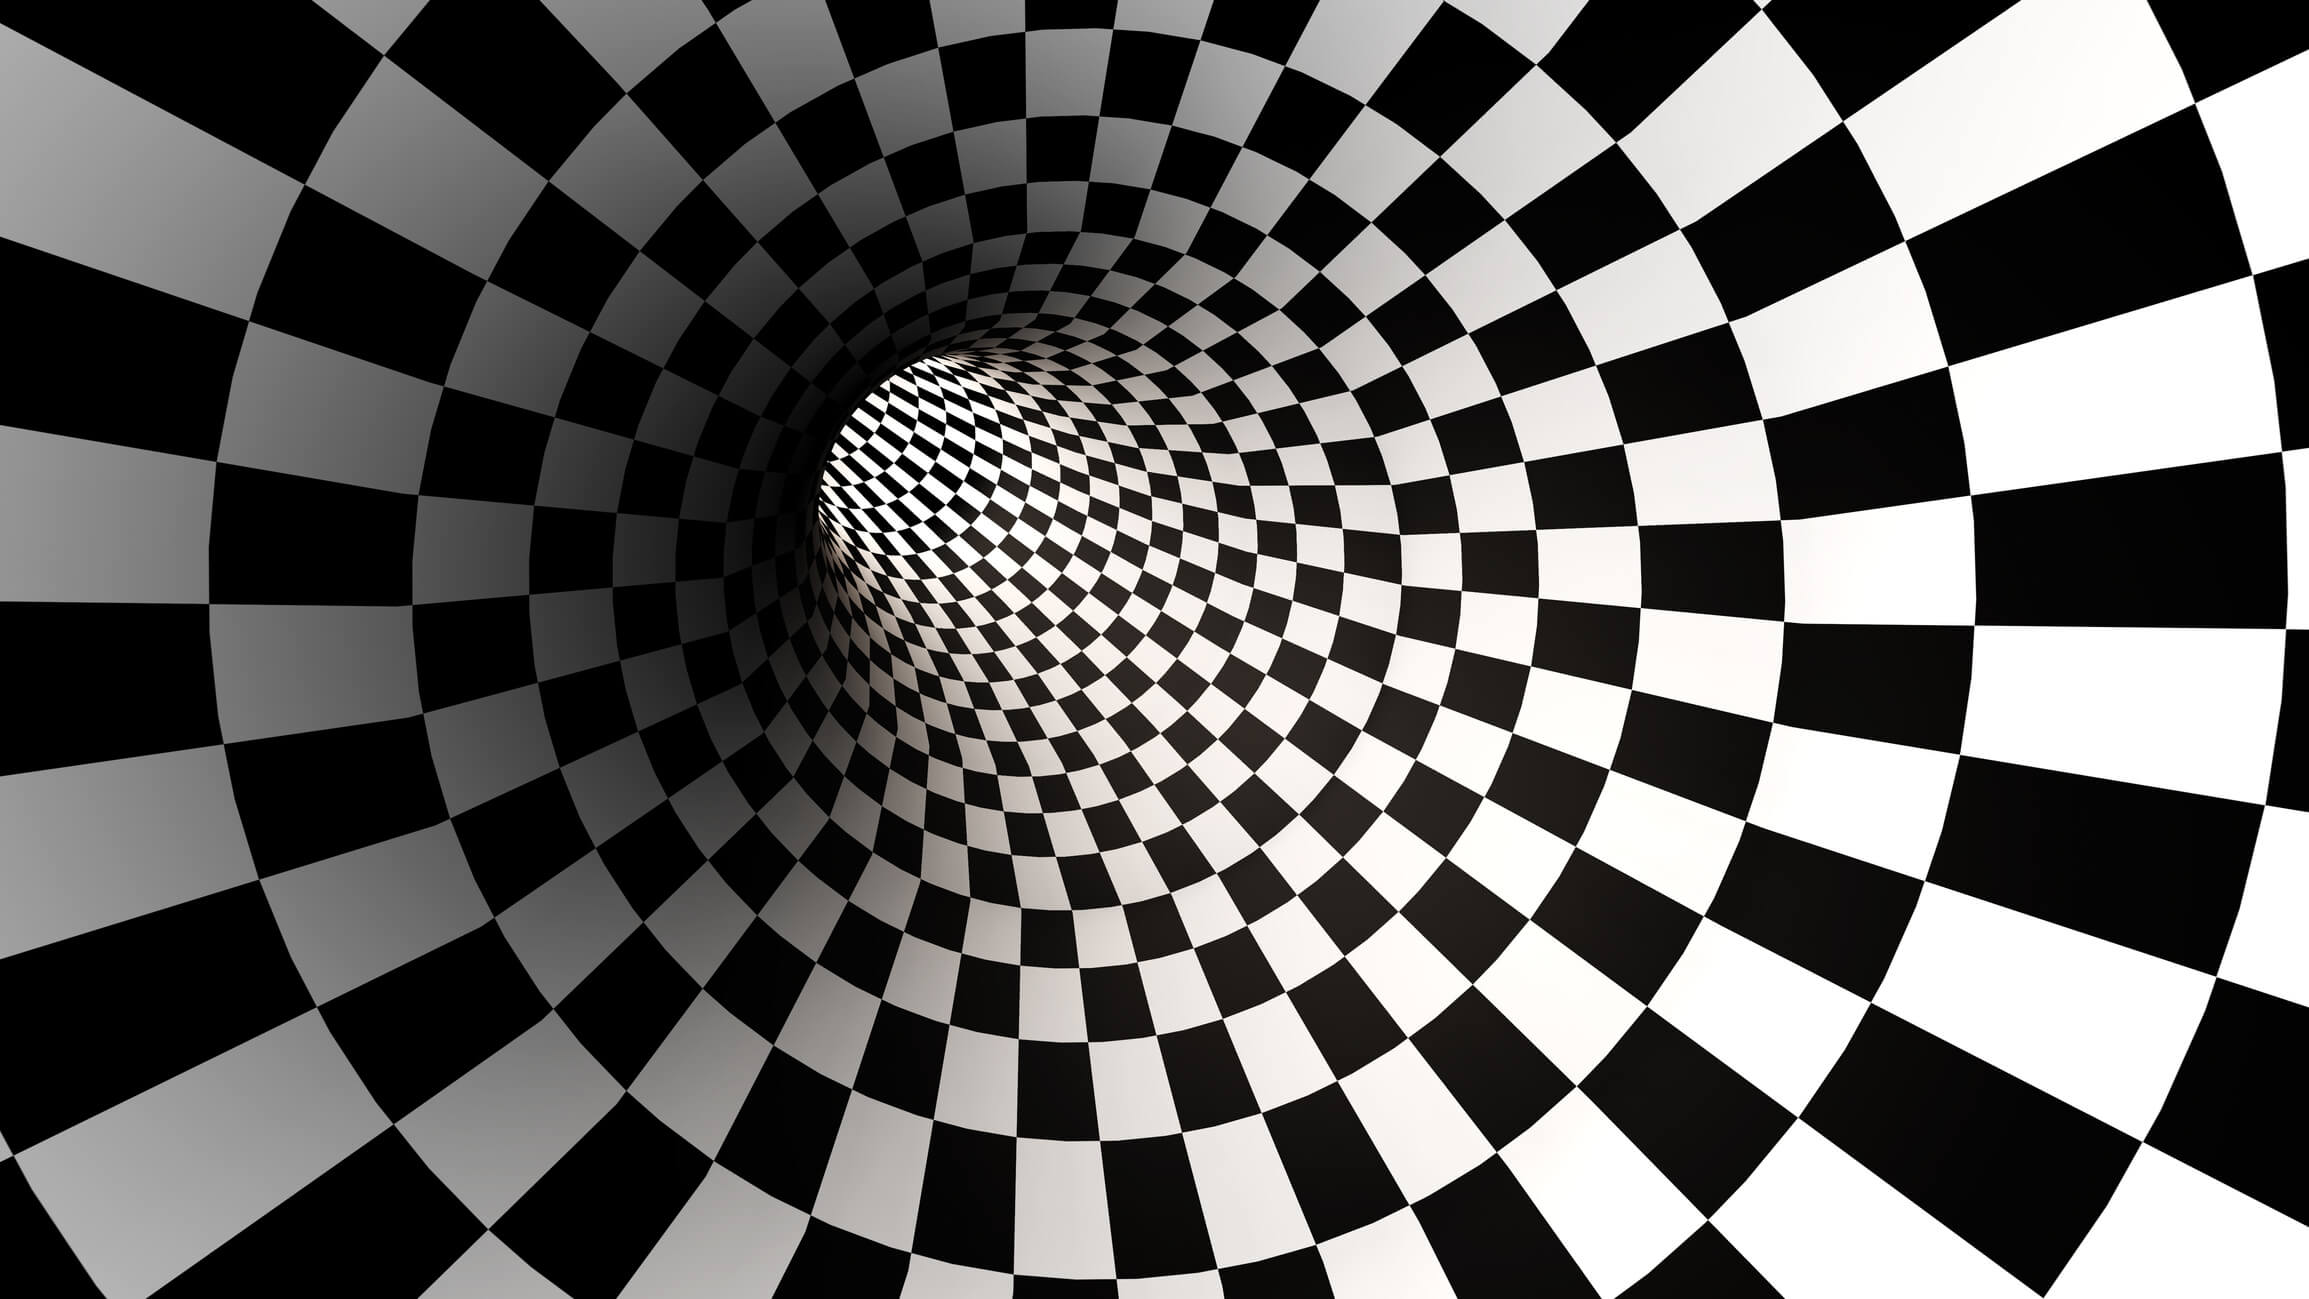 Иллюзия 9 букв. Шахматный тоннель. Шахматные клетки в перспективе. Шахматная иллюзия. Шахматная доска в перспективе.